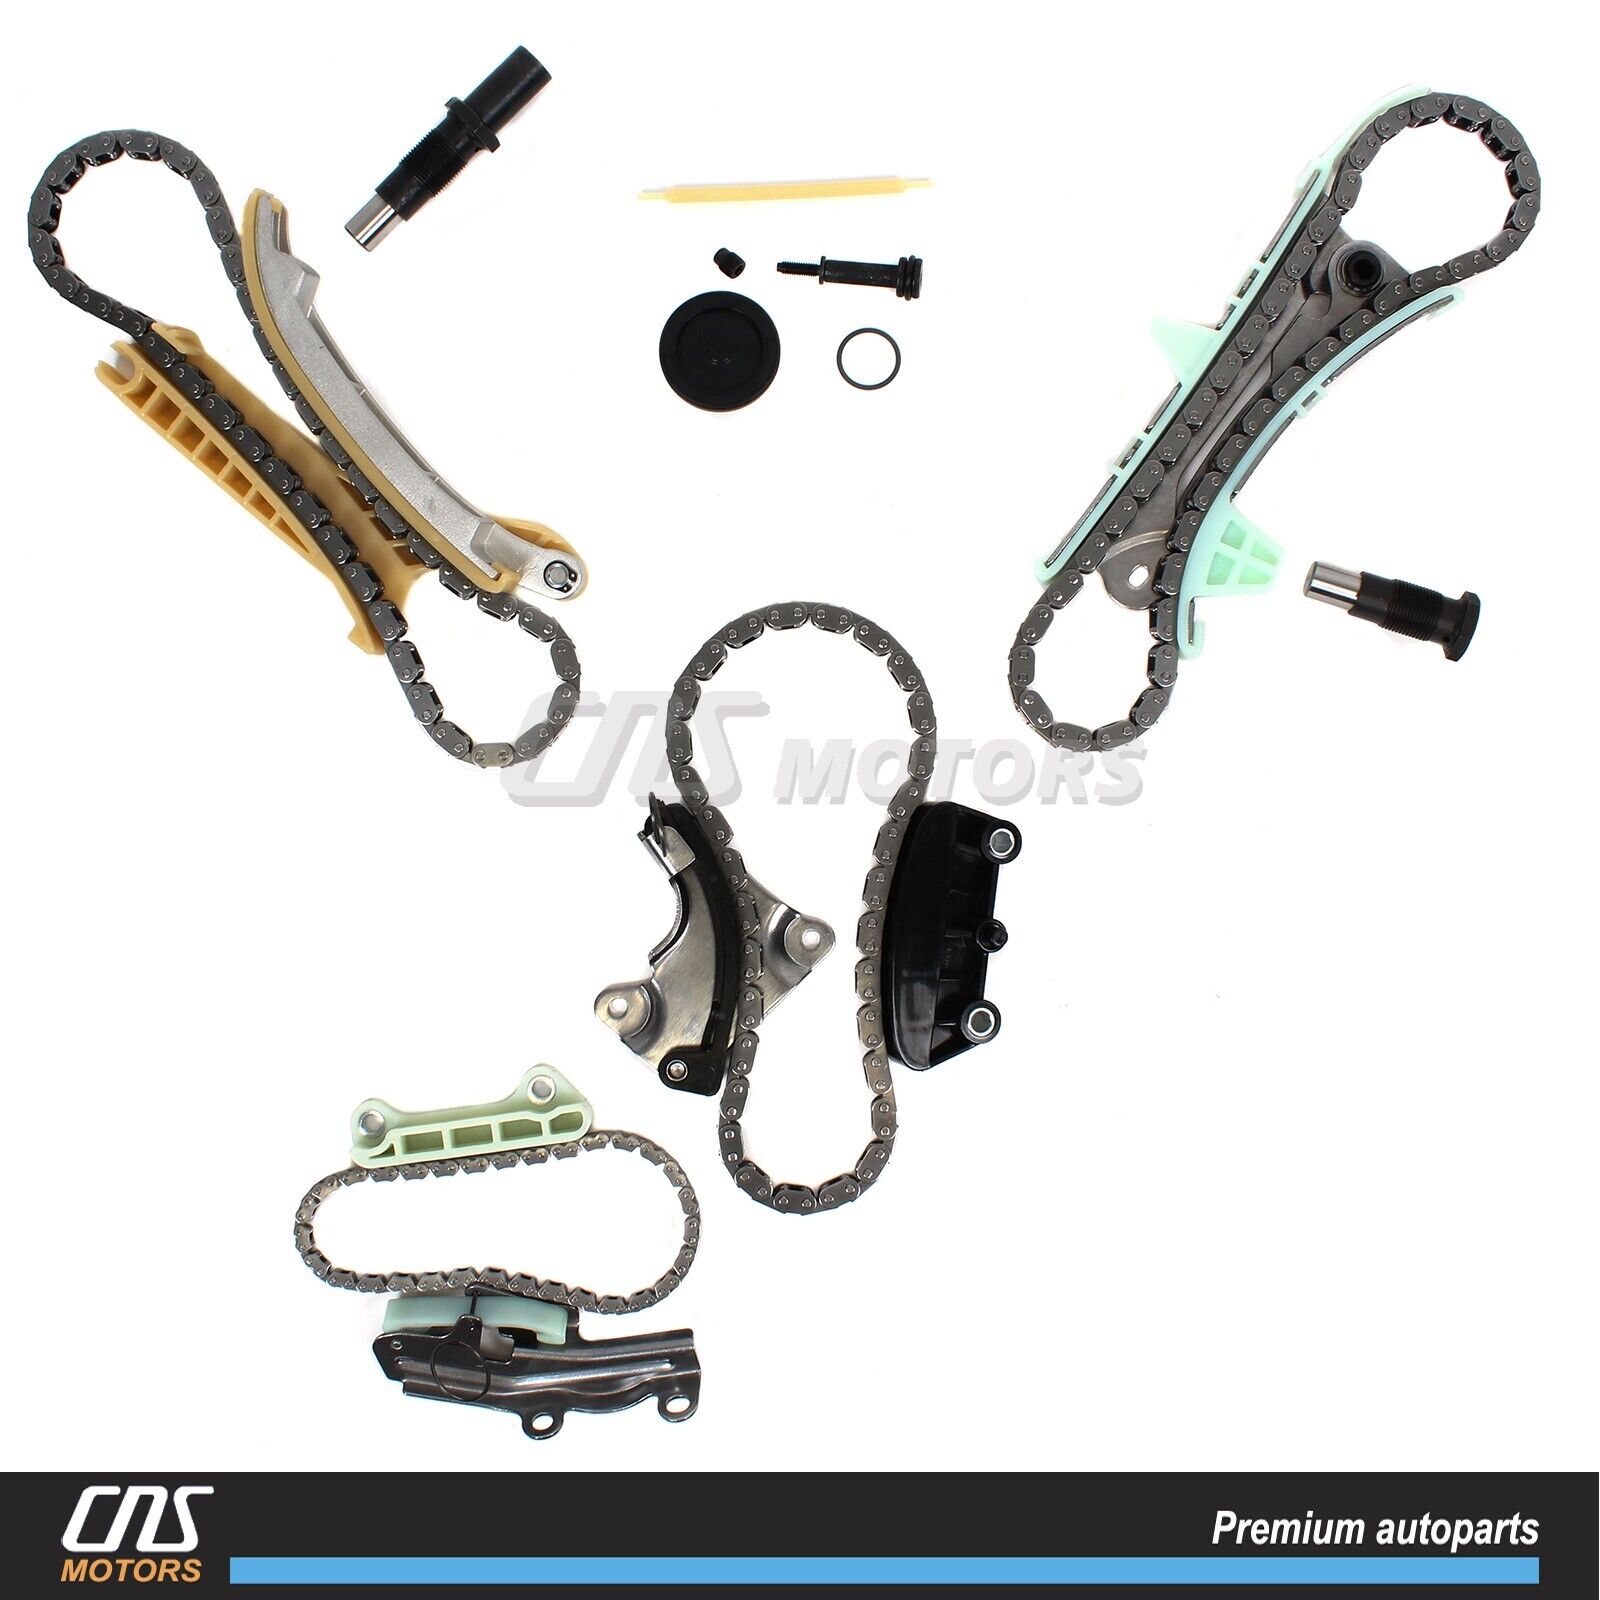  Timing Chain Kit for 97-10 Ford Ranger Explorer Mercury Mazda B4000 4.0L⭐⭐⭐⭐⭐